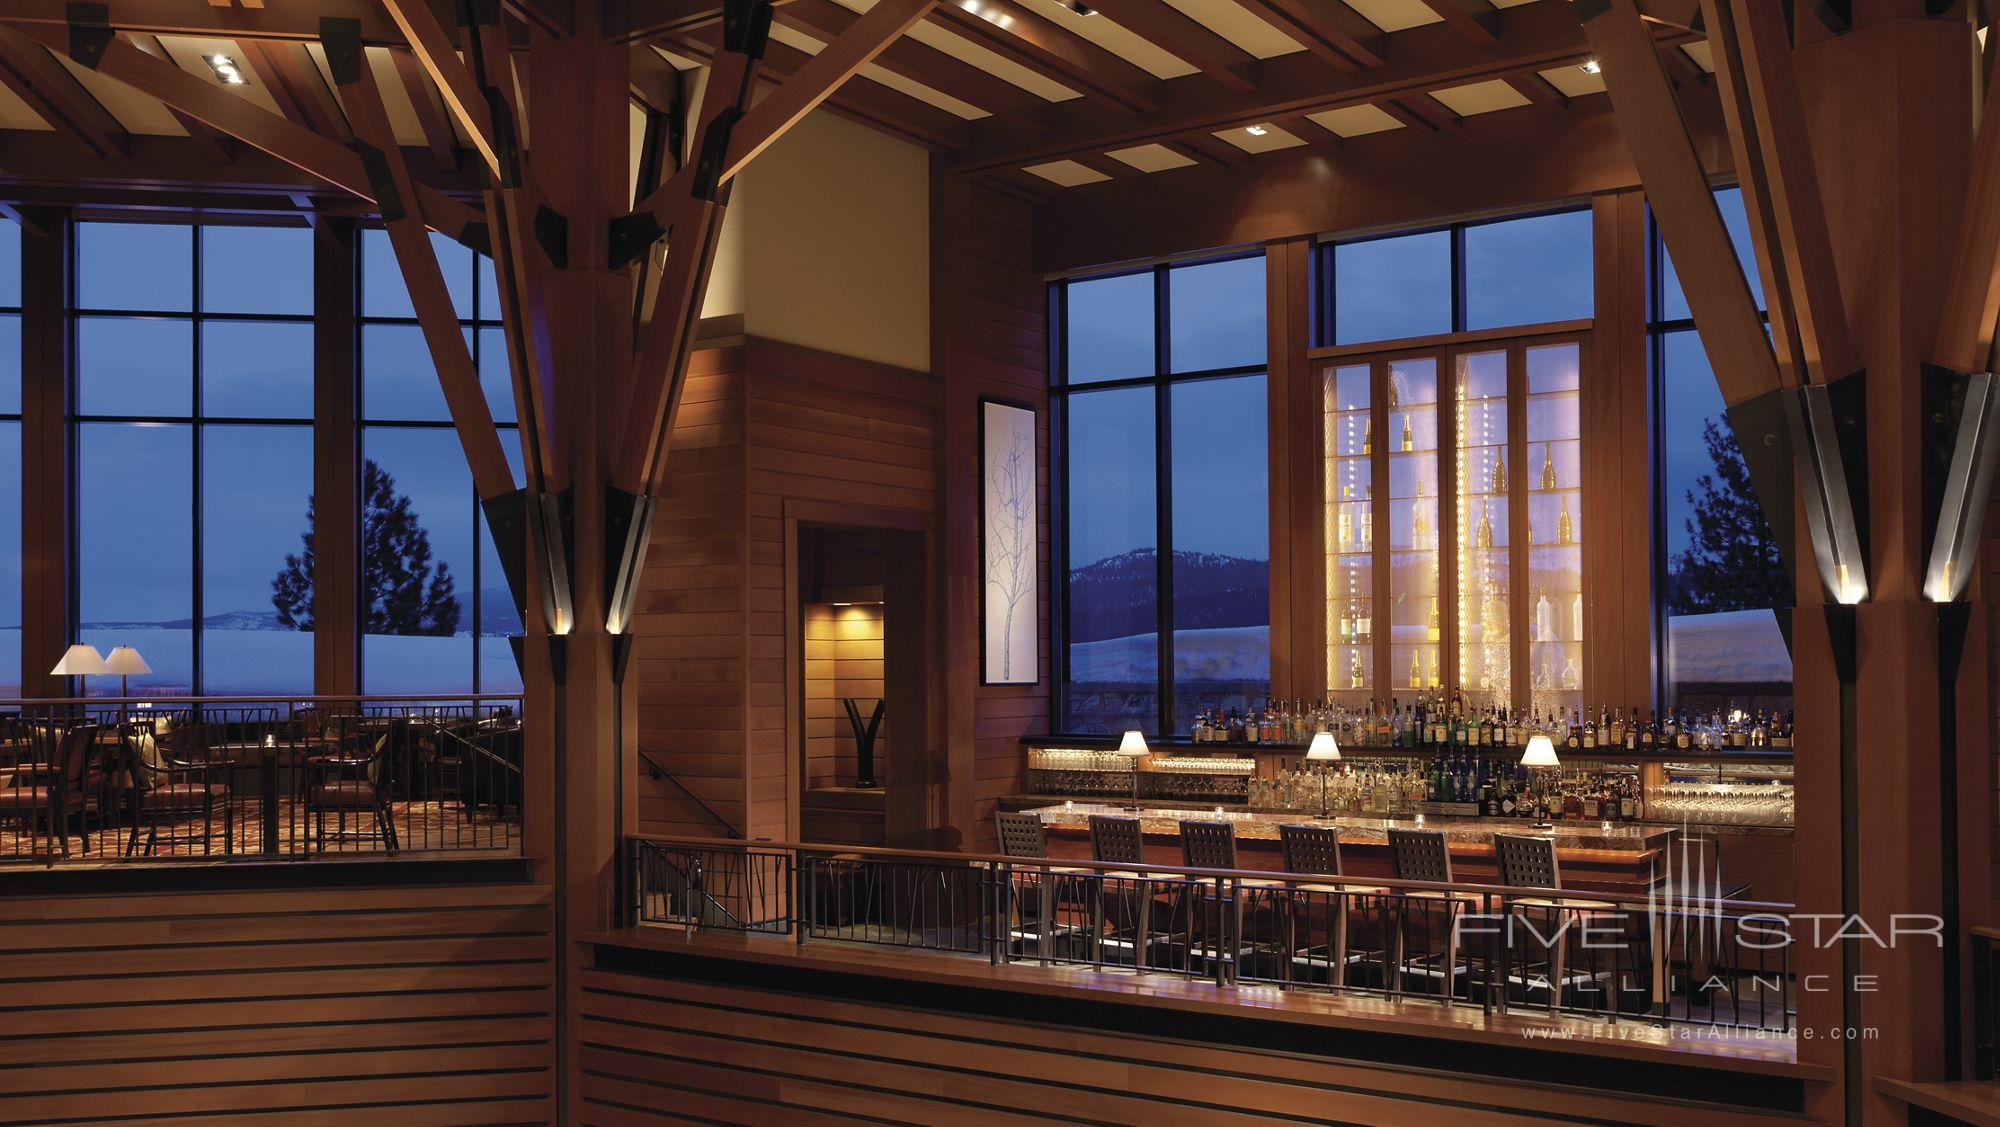 The Ritz-Carlton, Lake Tahoe